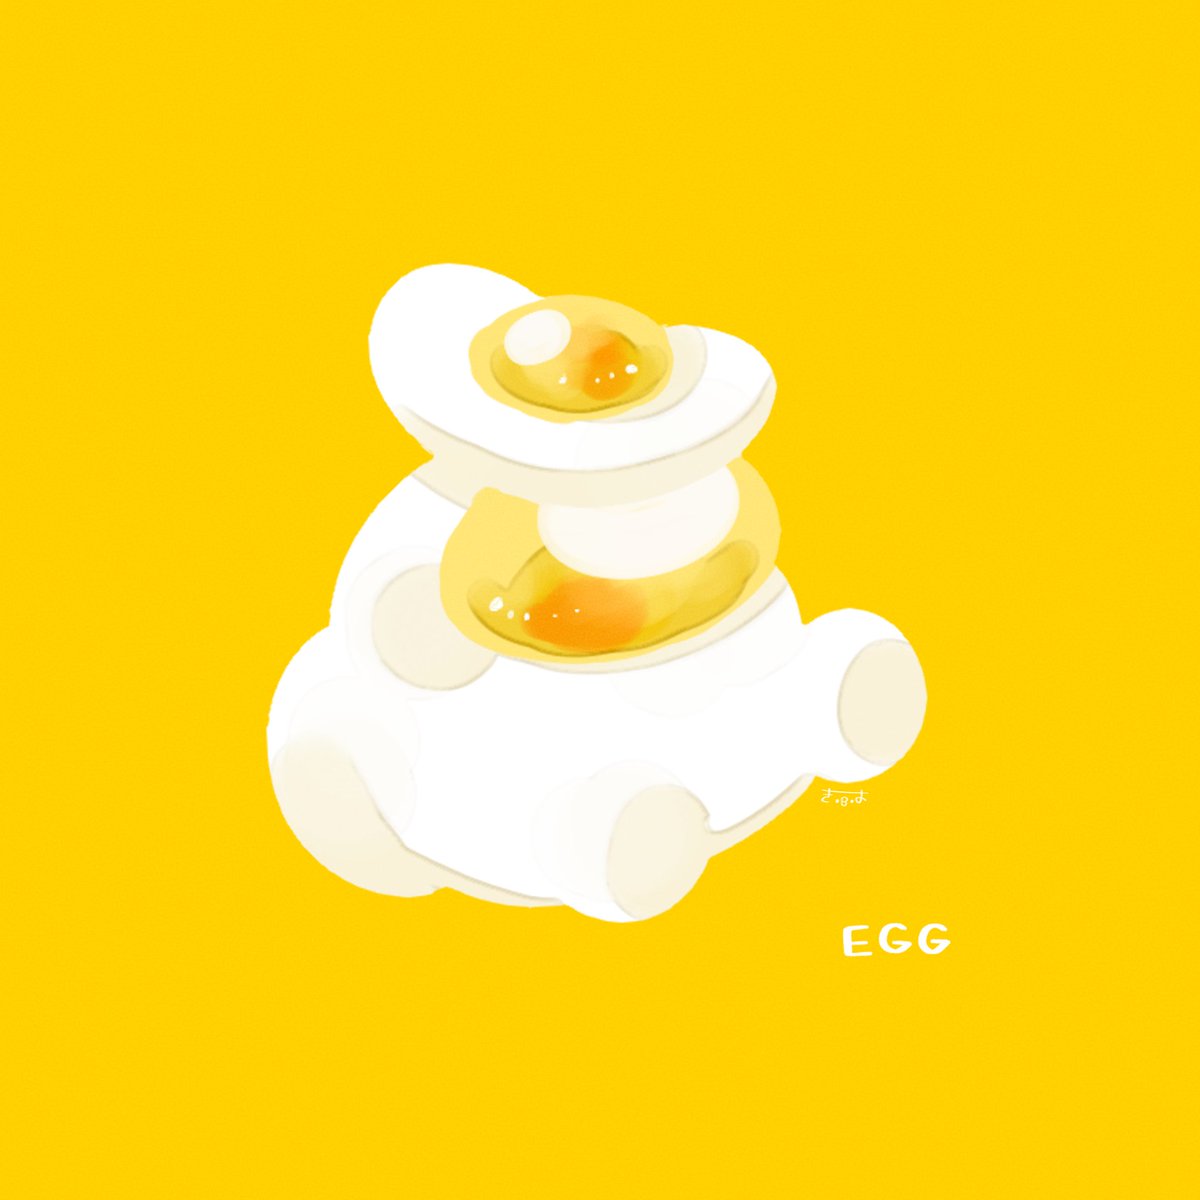 「EGG 」|てんみやきよのイラスト